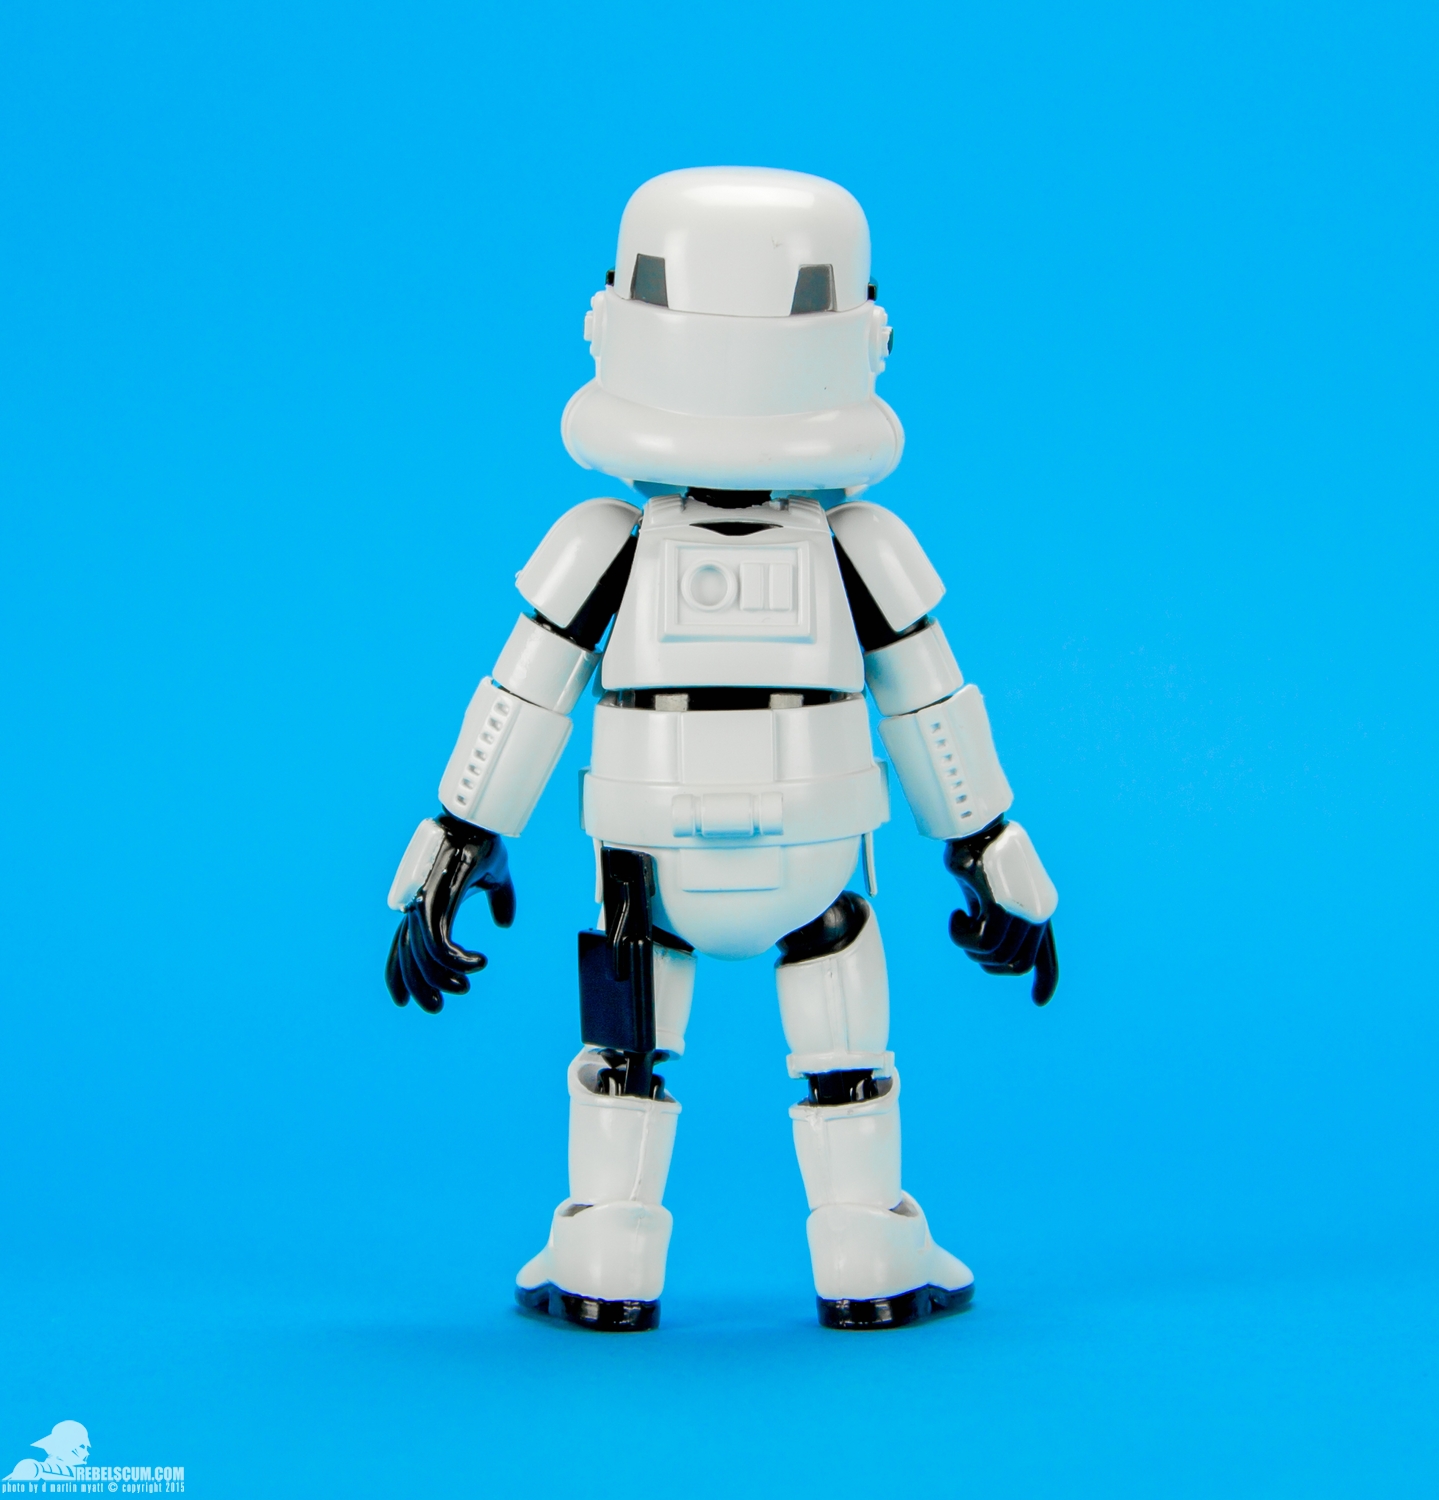 HMF005-Stormtrooper-Herocross-Hybrid-Metal-Figuration-Series-004.jpg